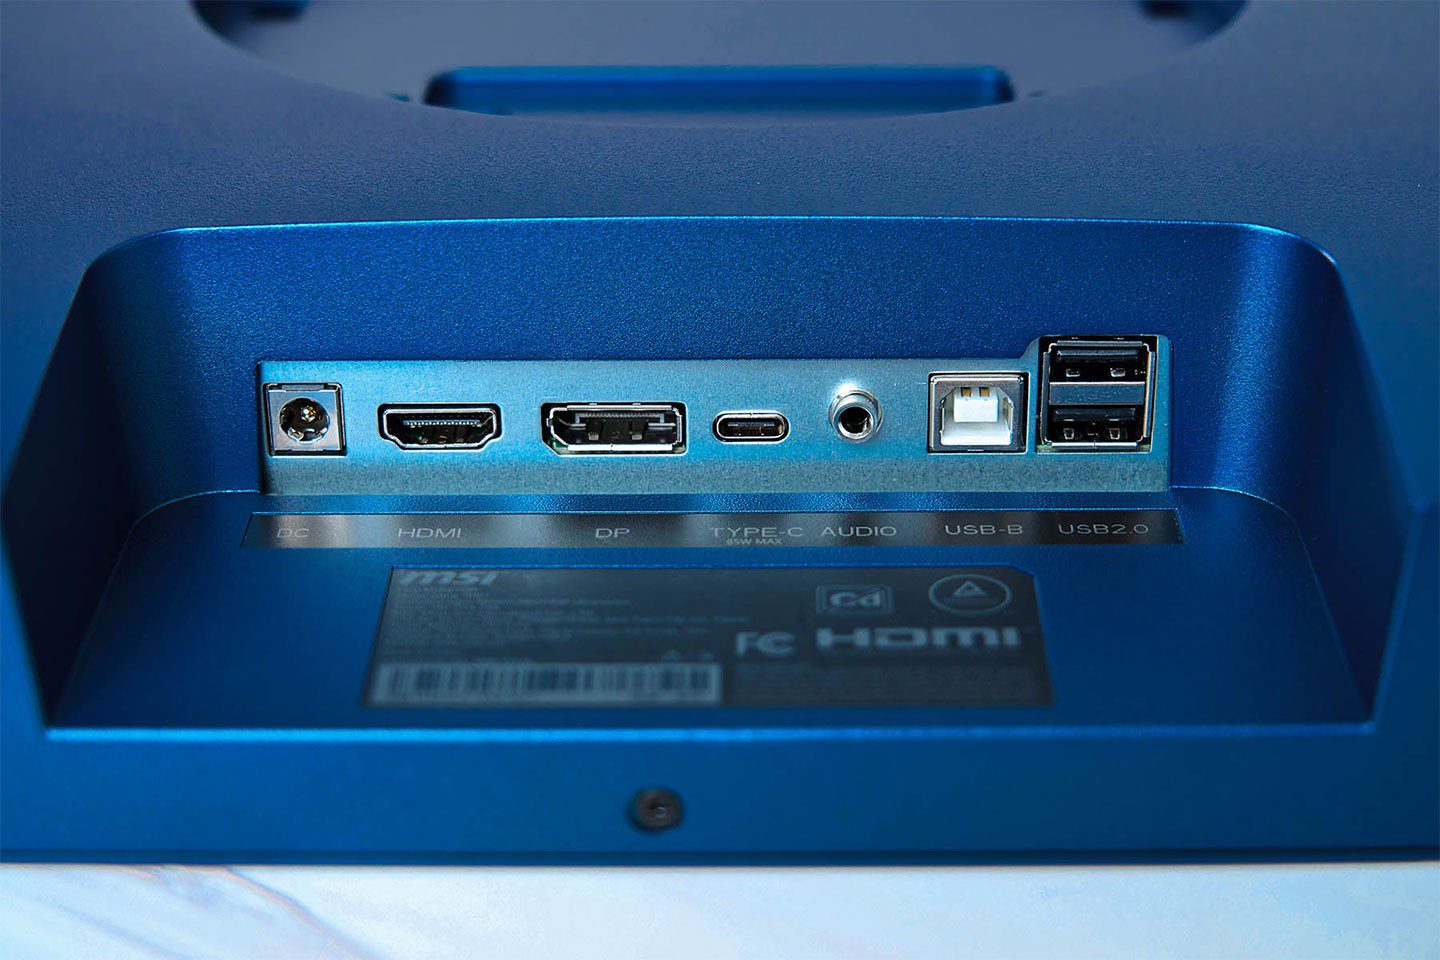 各種 連結 埠 規劃 於 顯示器 底部 ， 包含 電源 接口 、 HDMI 埠 、 DisplayPort 、 USB Type-C 3.5 mm 音源 輸出 、 USB Type-B 與 兩組 、 USB Type-C 5.0 、 USB 2.0 （Type 3.0 （Type 2.0）